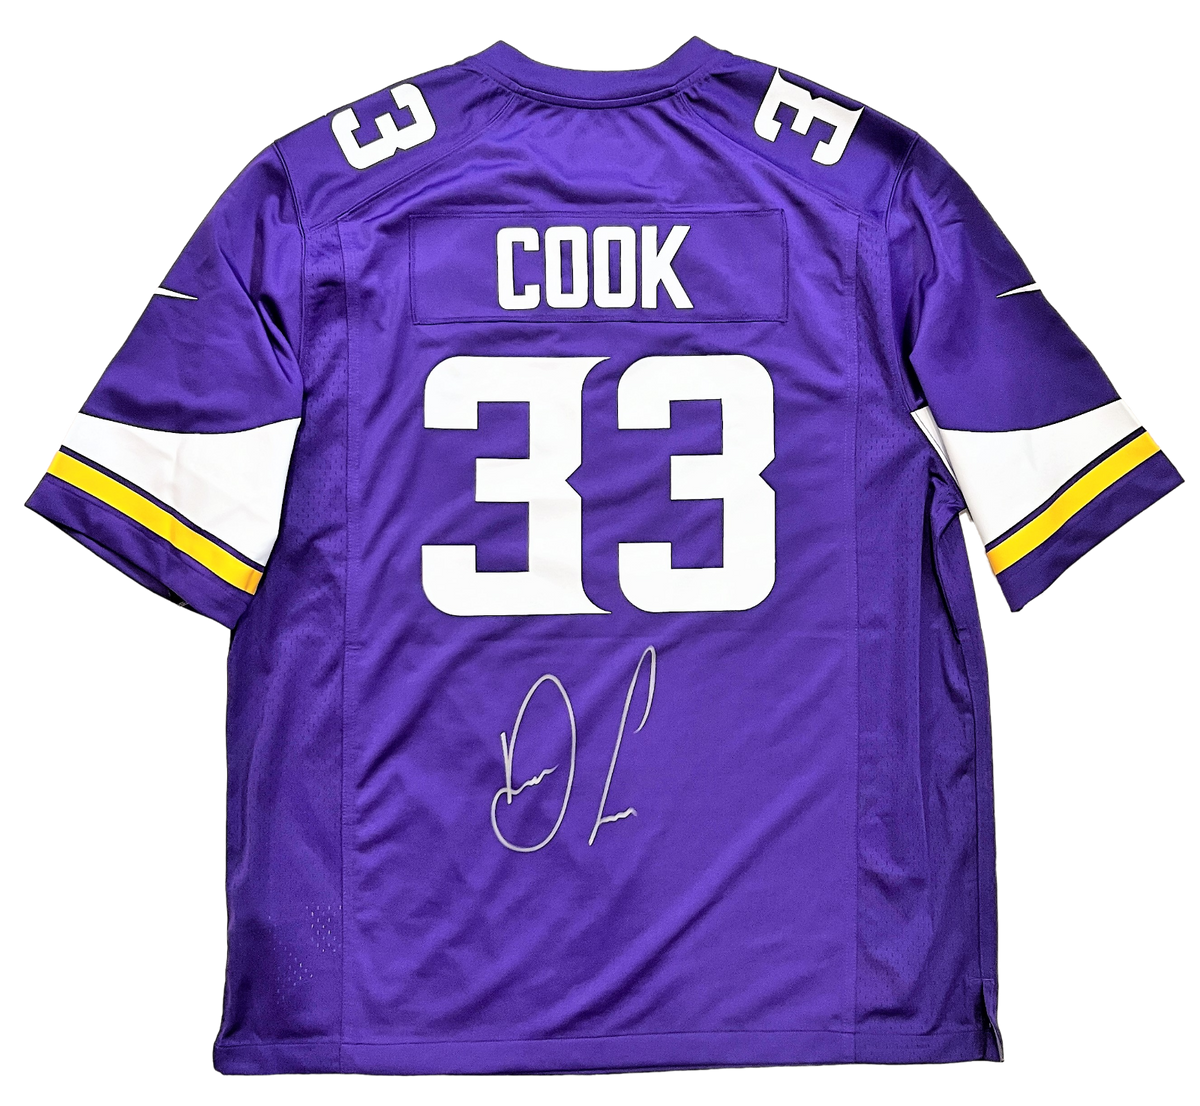 Cook Dalvin replica jersey